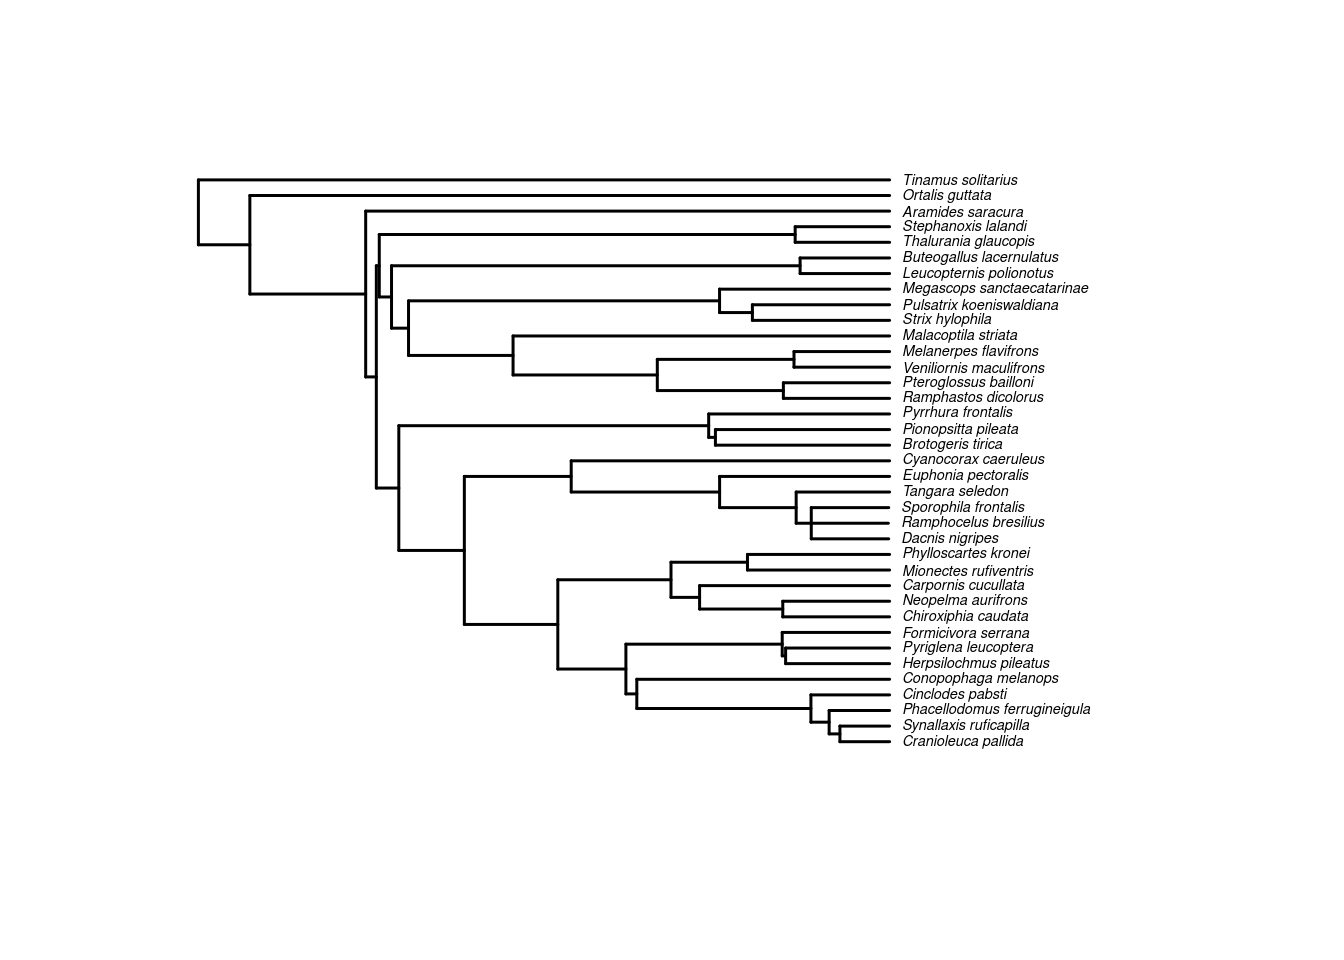 Filogenia de 37 espécies de aves endêmicas da Mata Atlântica.